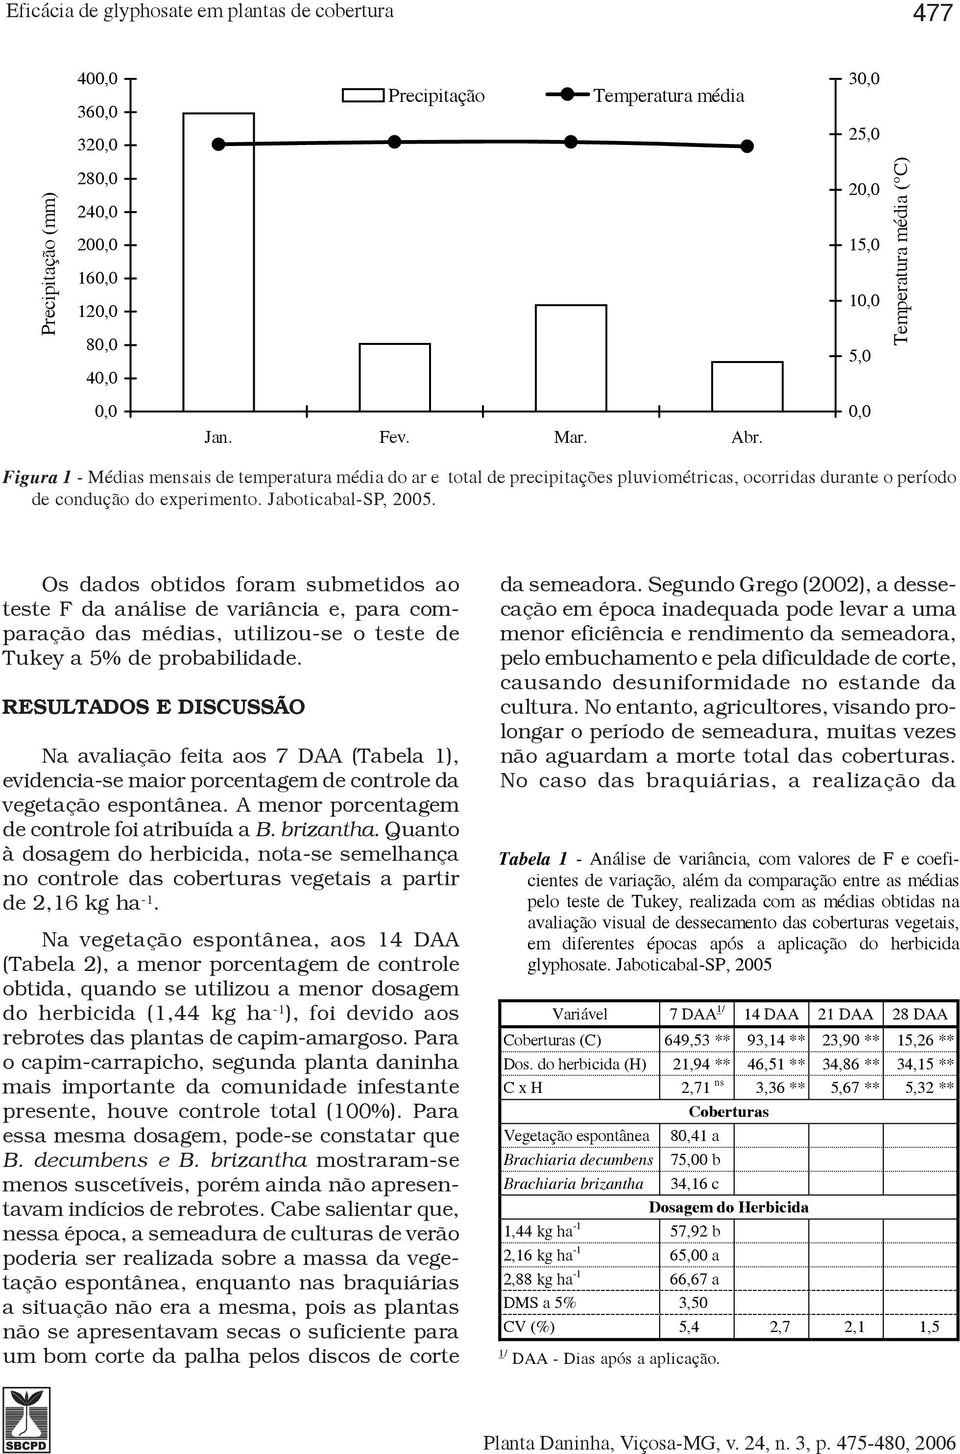 Jaboticabal-SP, 2005. Os dados obtidos foram submetidos ao teste F da análise de variância e, para comparação das médias, utilizou-se o teste de Tukey a 5% de probabilidade.